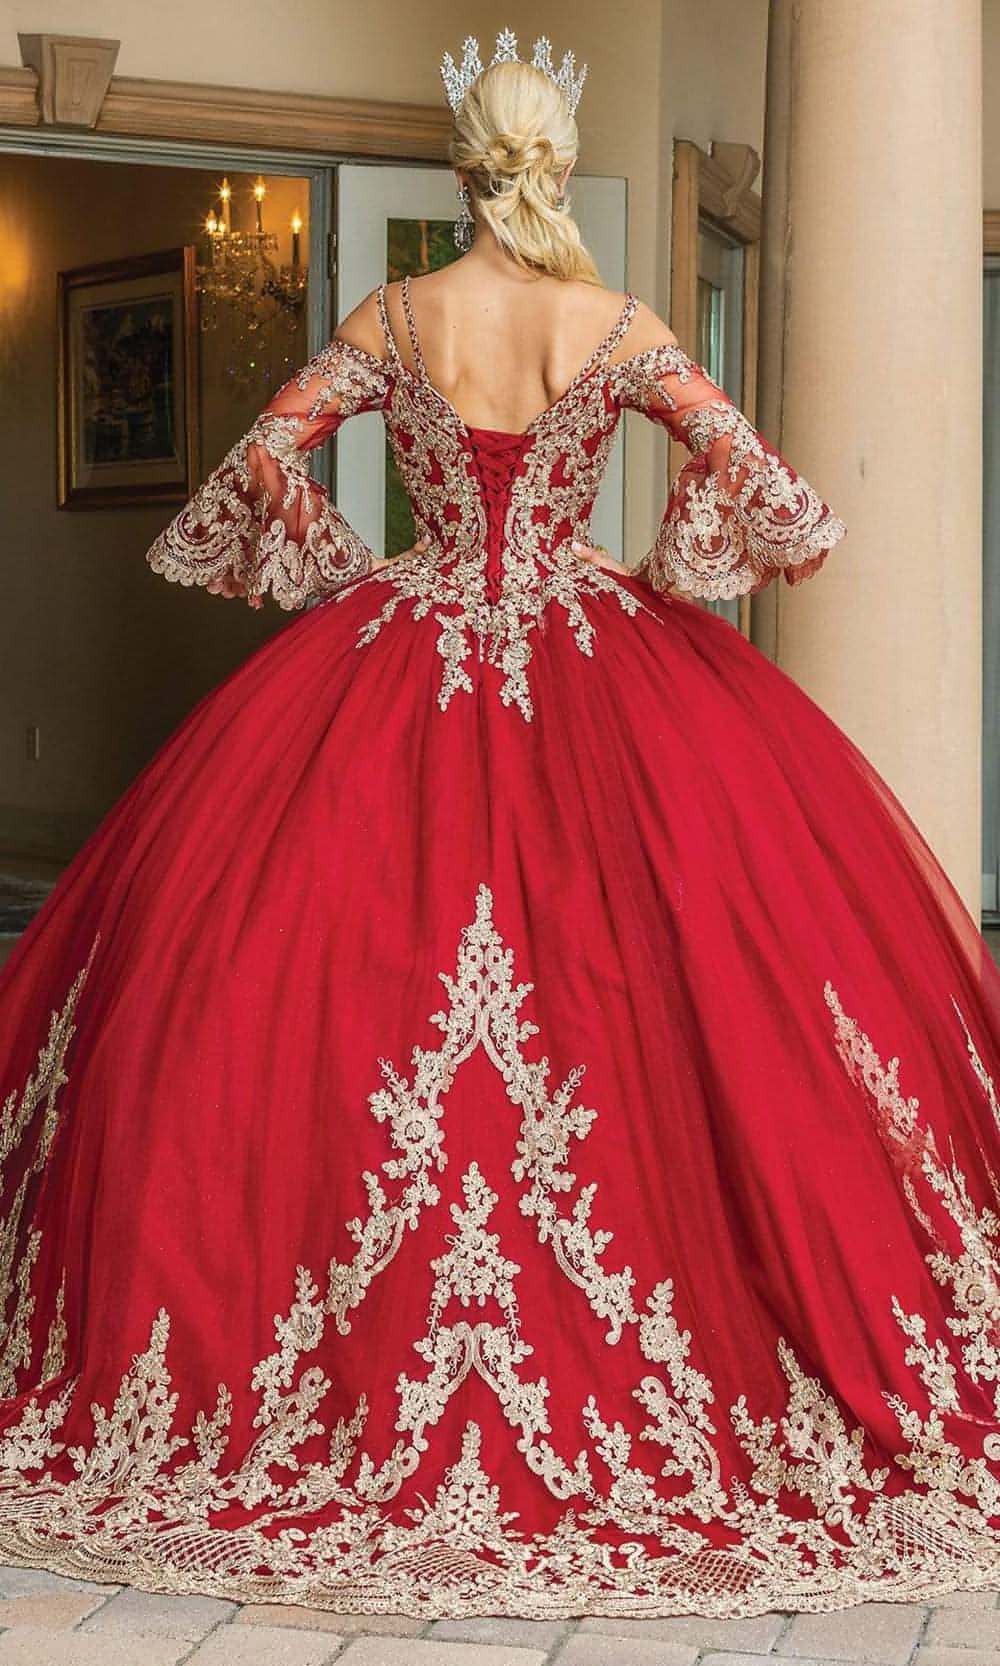 Dancing Queen - 1614 Bell Sleeve Metallic Ornate Gown - Mis Quince PrimaverasDancing Queen